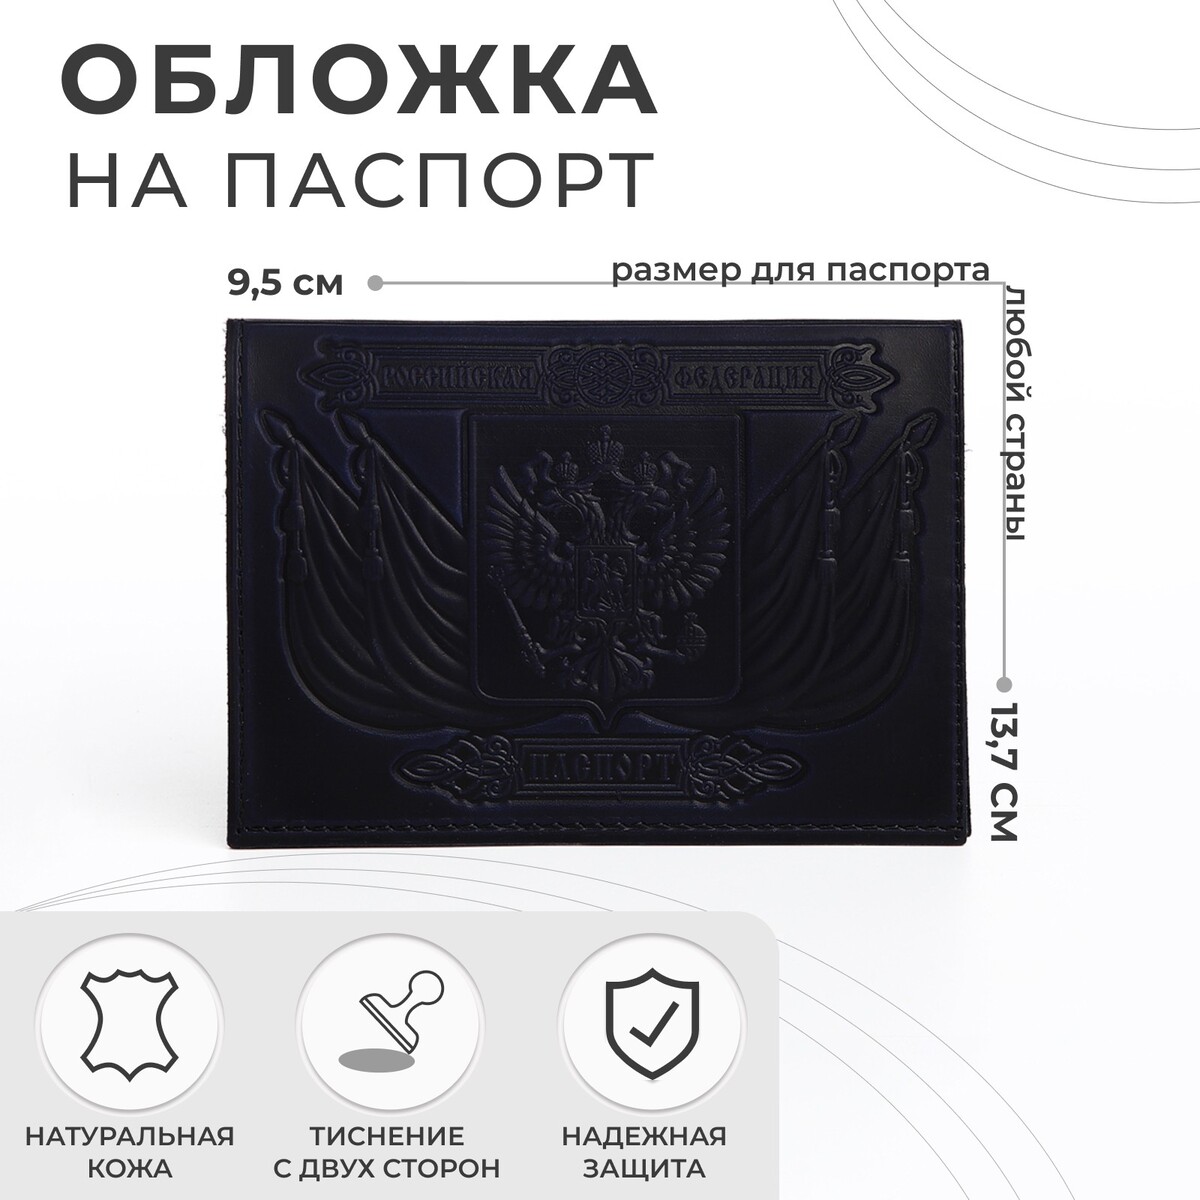 Обложка для паспорта, тиснение, герб, цвет темно-синий No brand